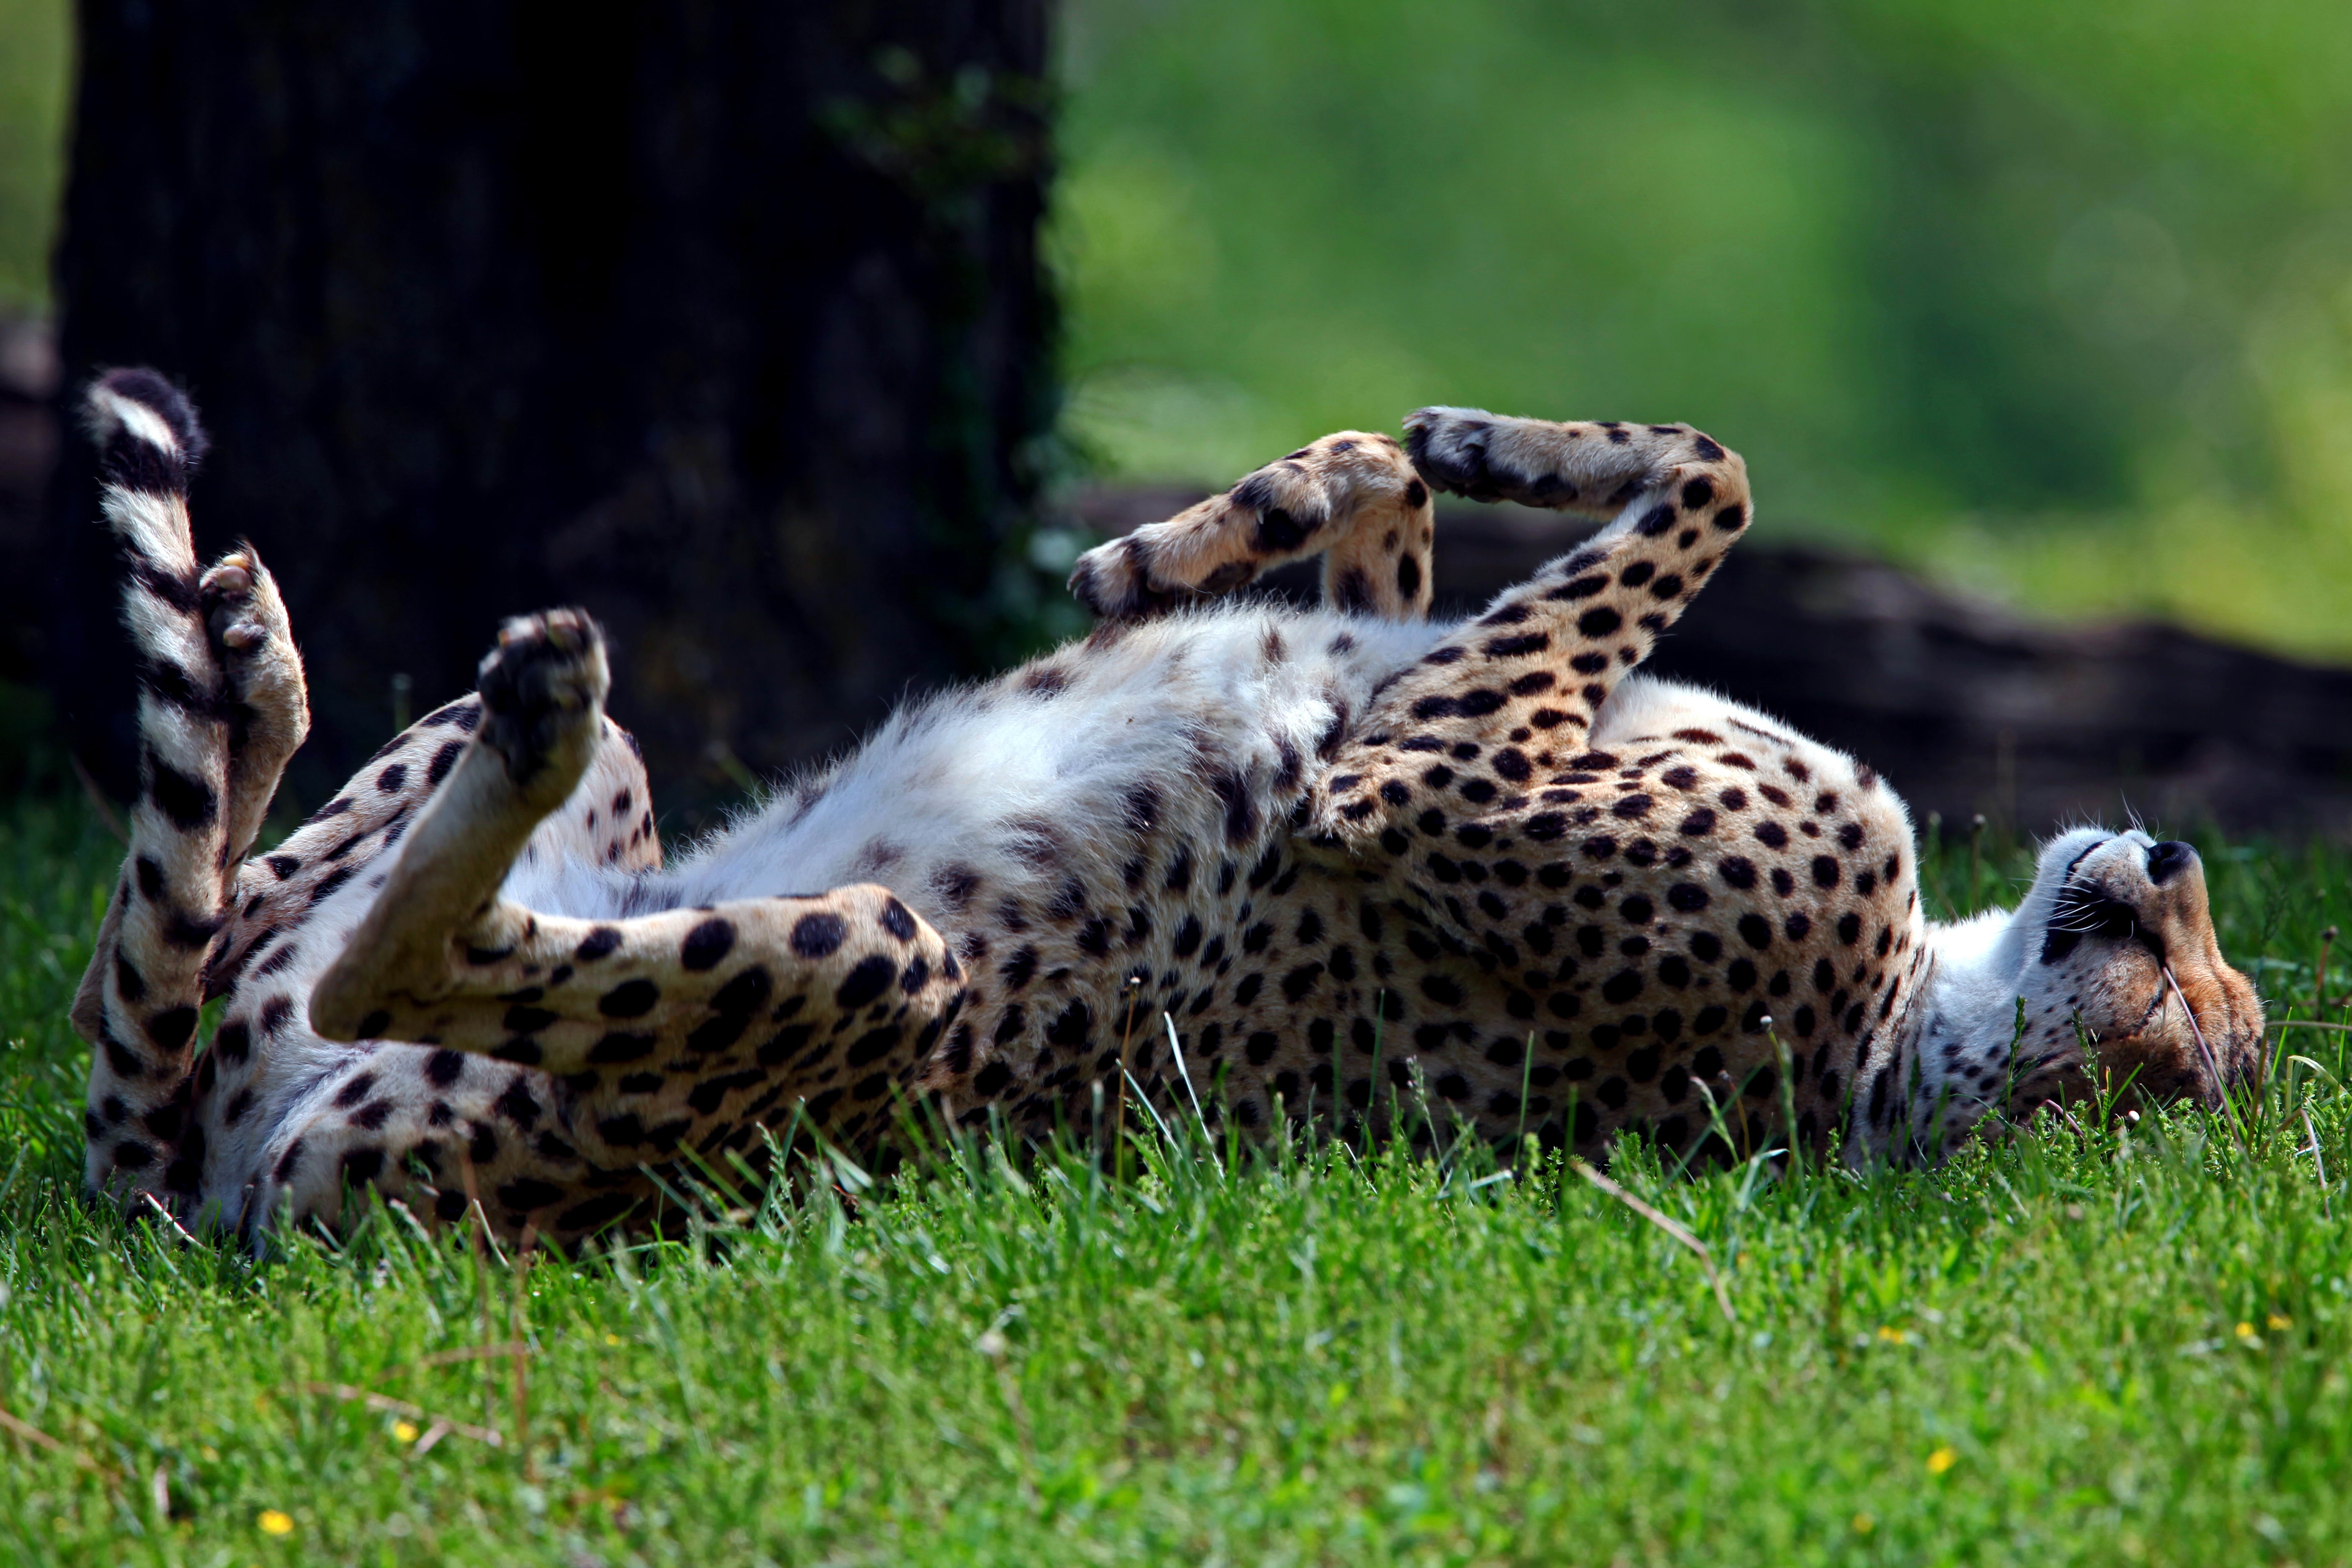 desktop Images animals, grass, cheetah, to lie down, lie, predator, tumble, somersault